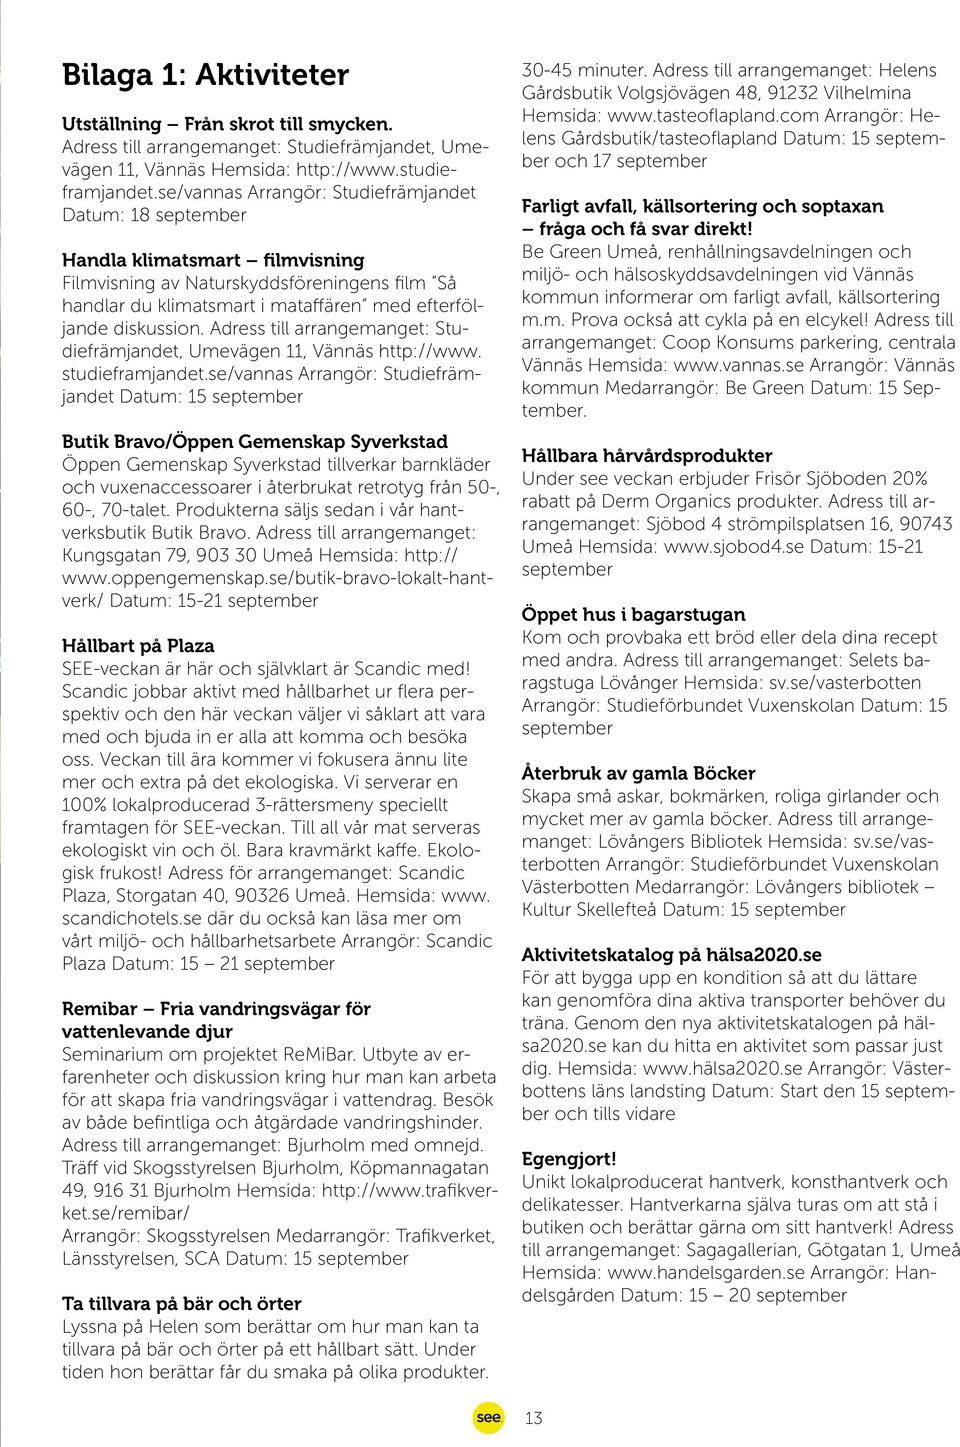 Adress till arrangemanget: Studiefrämjandet, Umevägen 11, Vännäs http://www. studieframjandet.